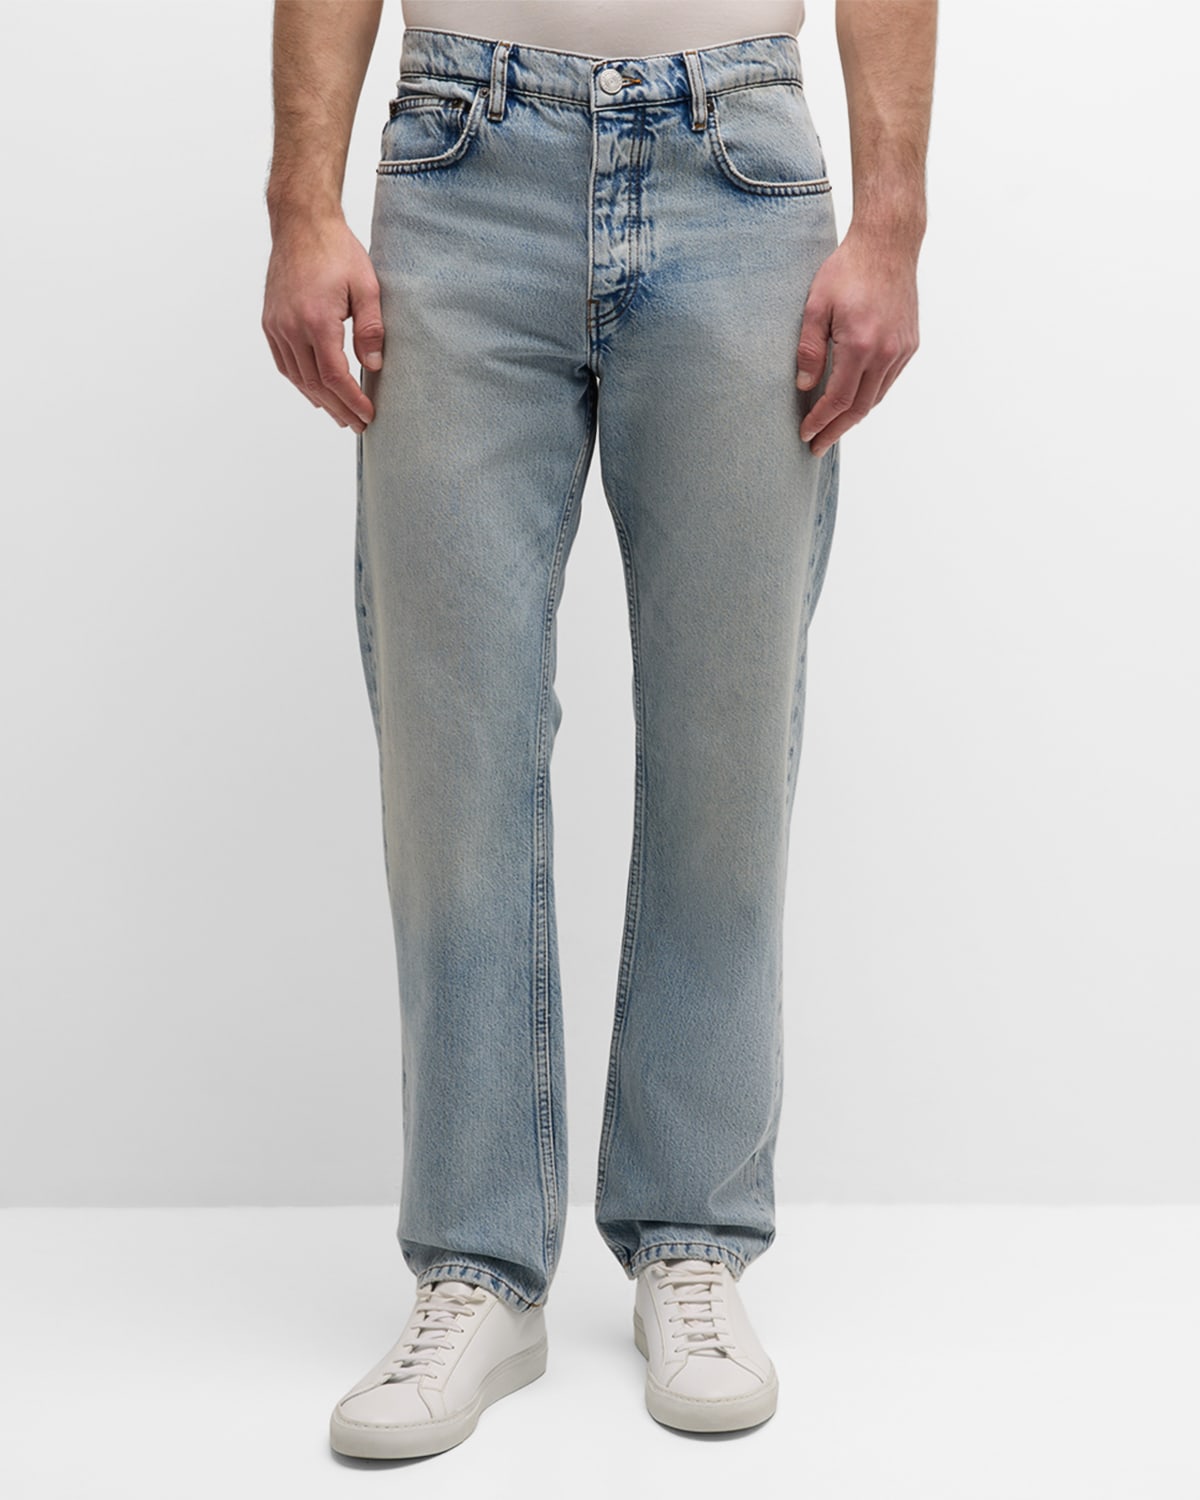 Men's Straight-Leg Jeans